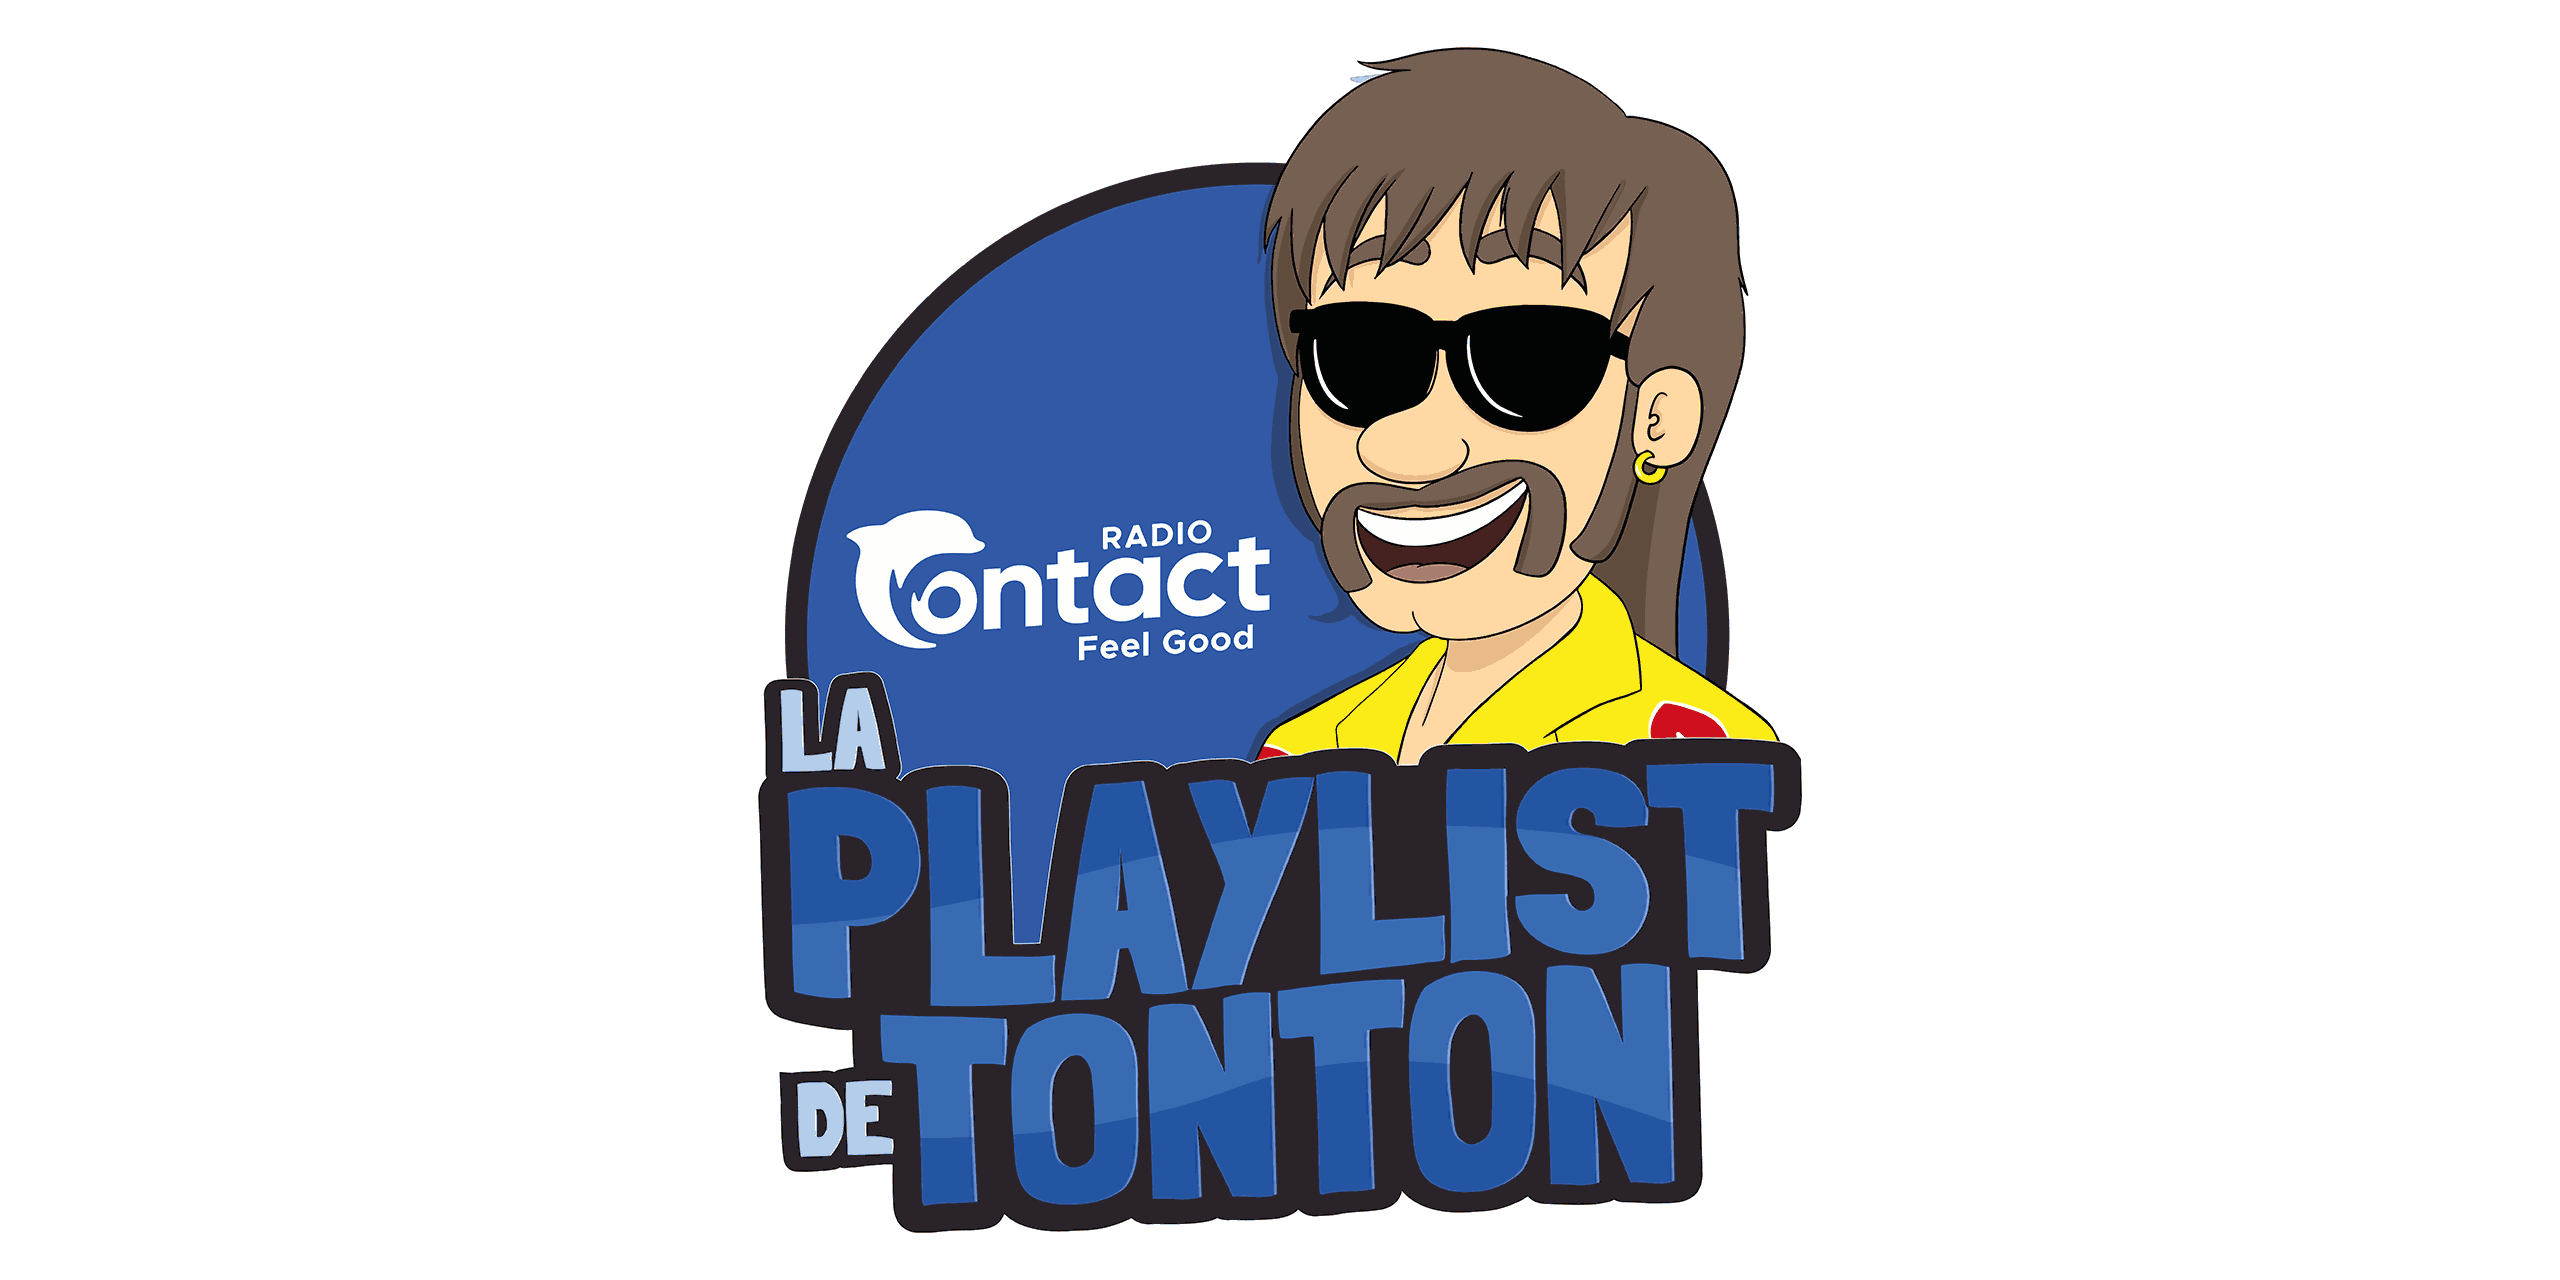 Contact - La playlist de Tonton